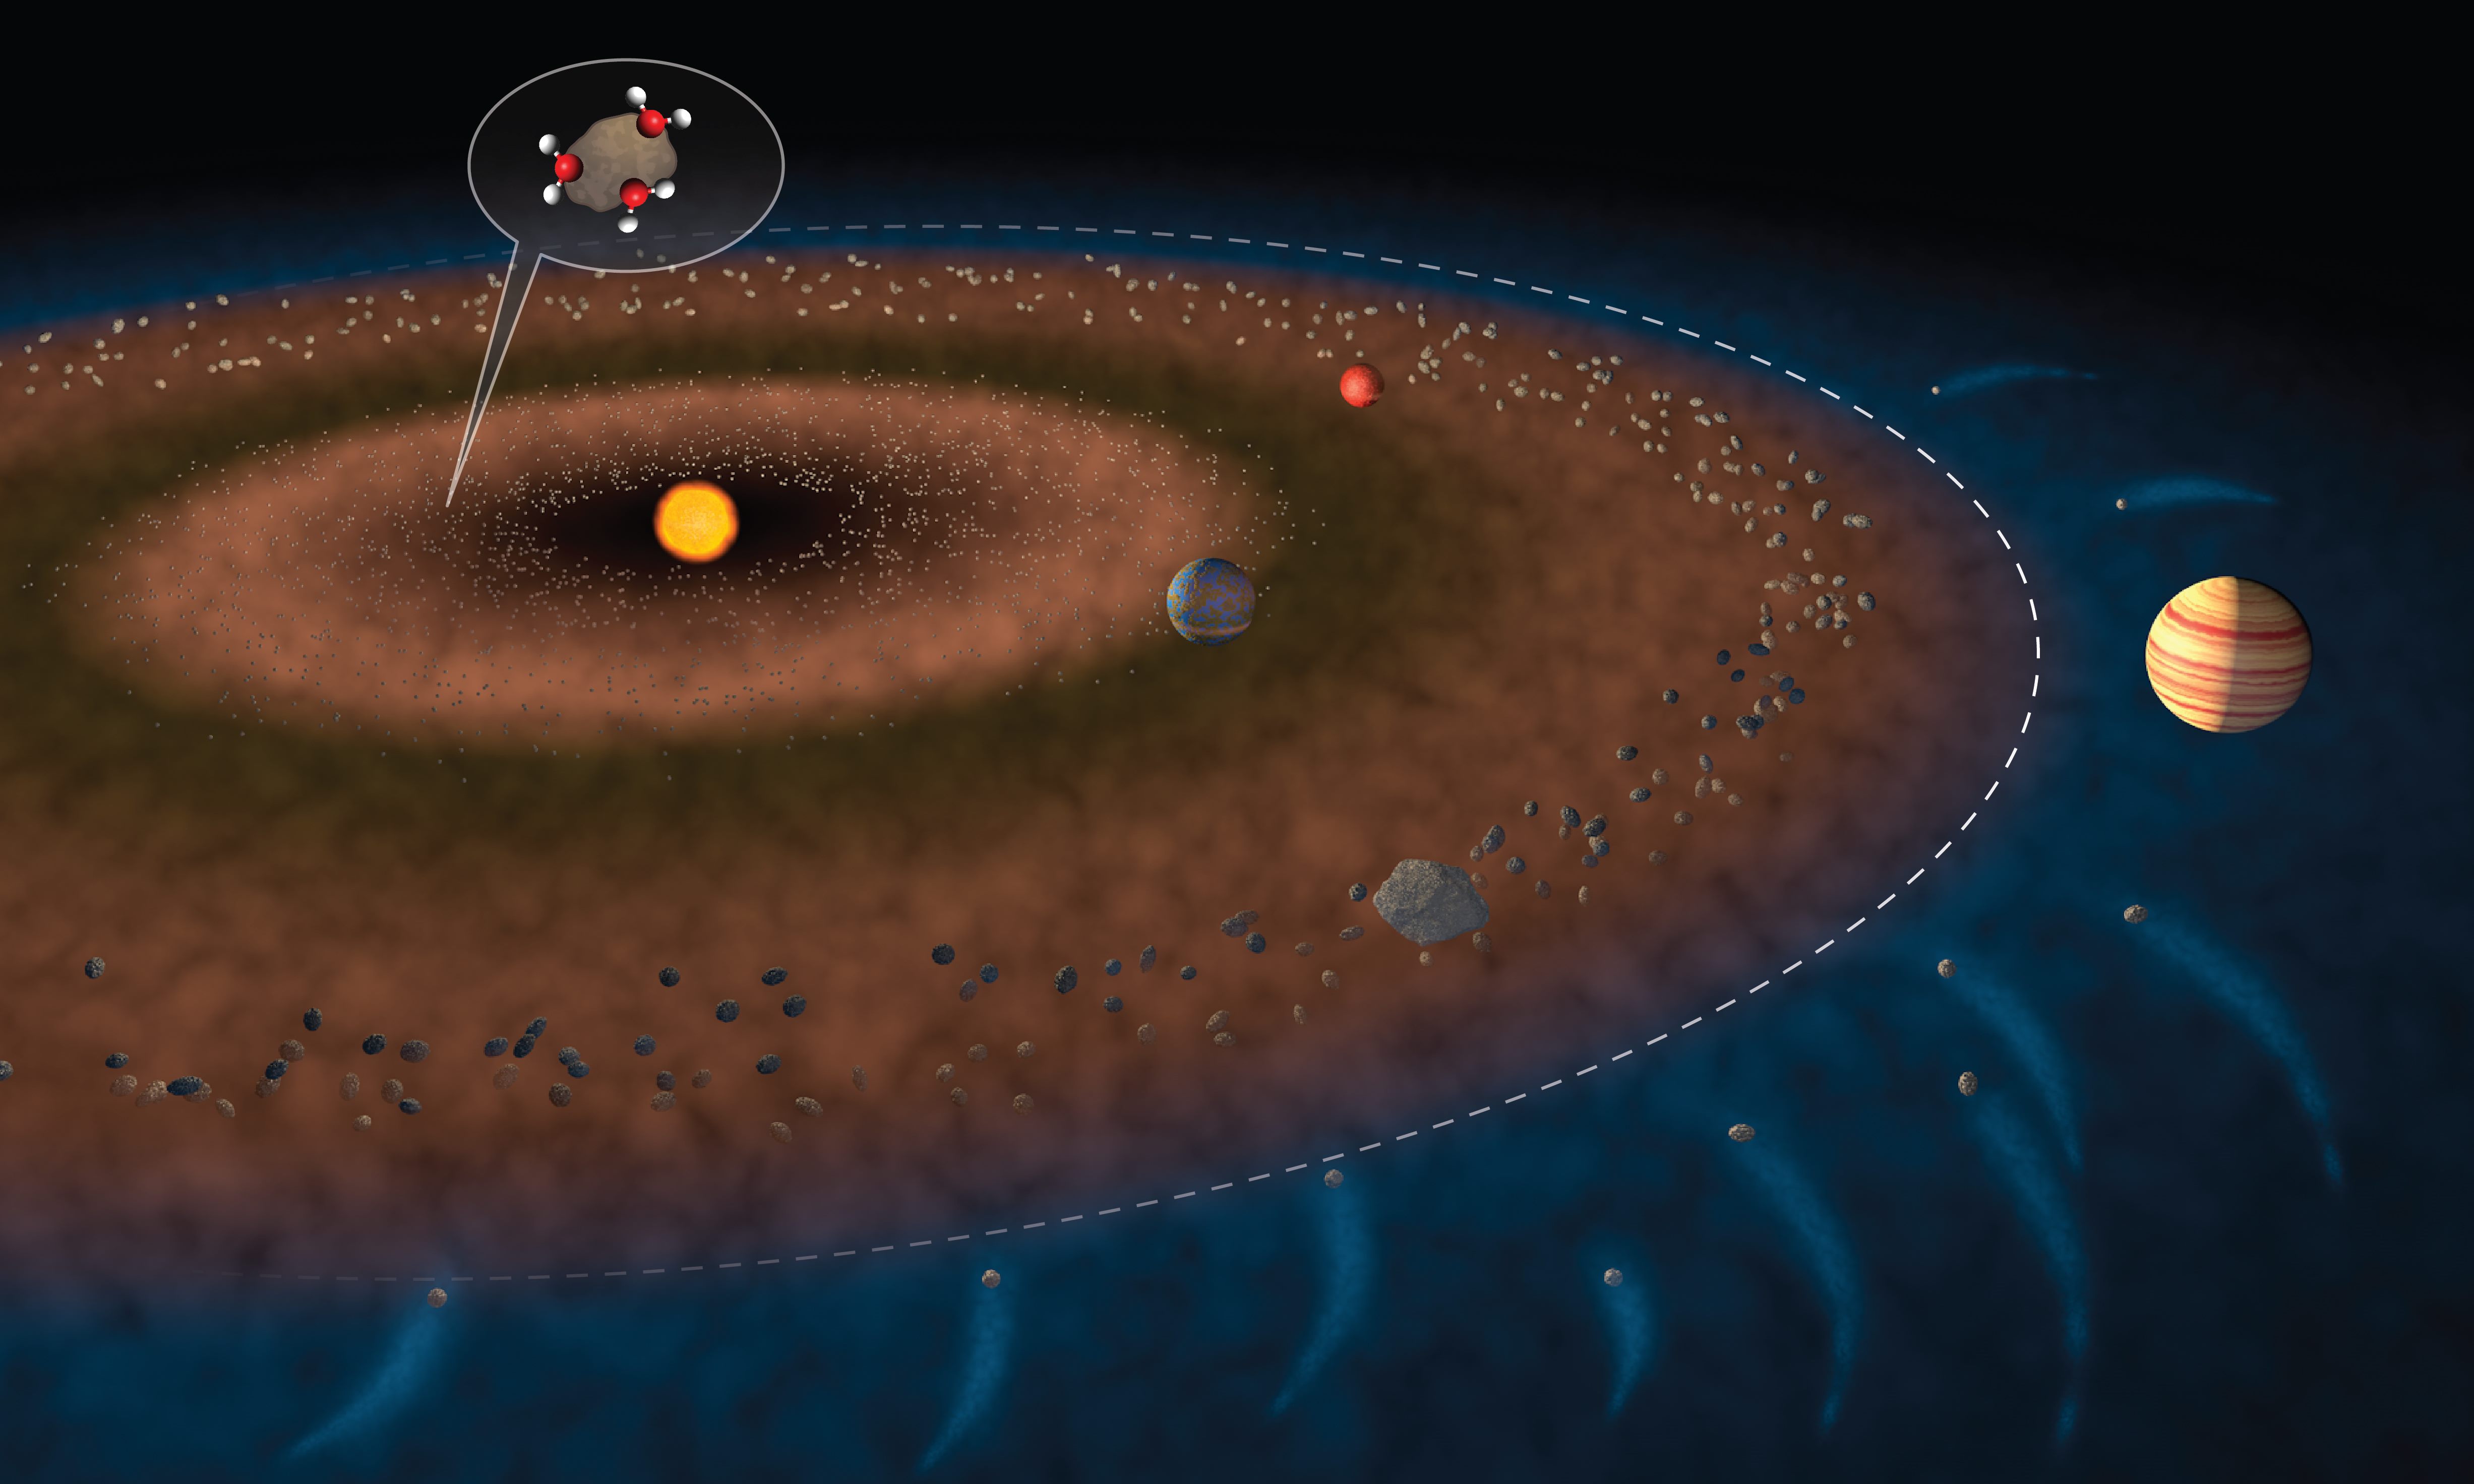 图中白色虚线显示了内太阳系和外太阳系的边界，小行星带大致位于火星和木星之间。图片上缘的放大图示显示了附着在岩石碎片上的水分子，意味这种天体可能将水带到地球。Credit: Jack Cook